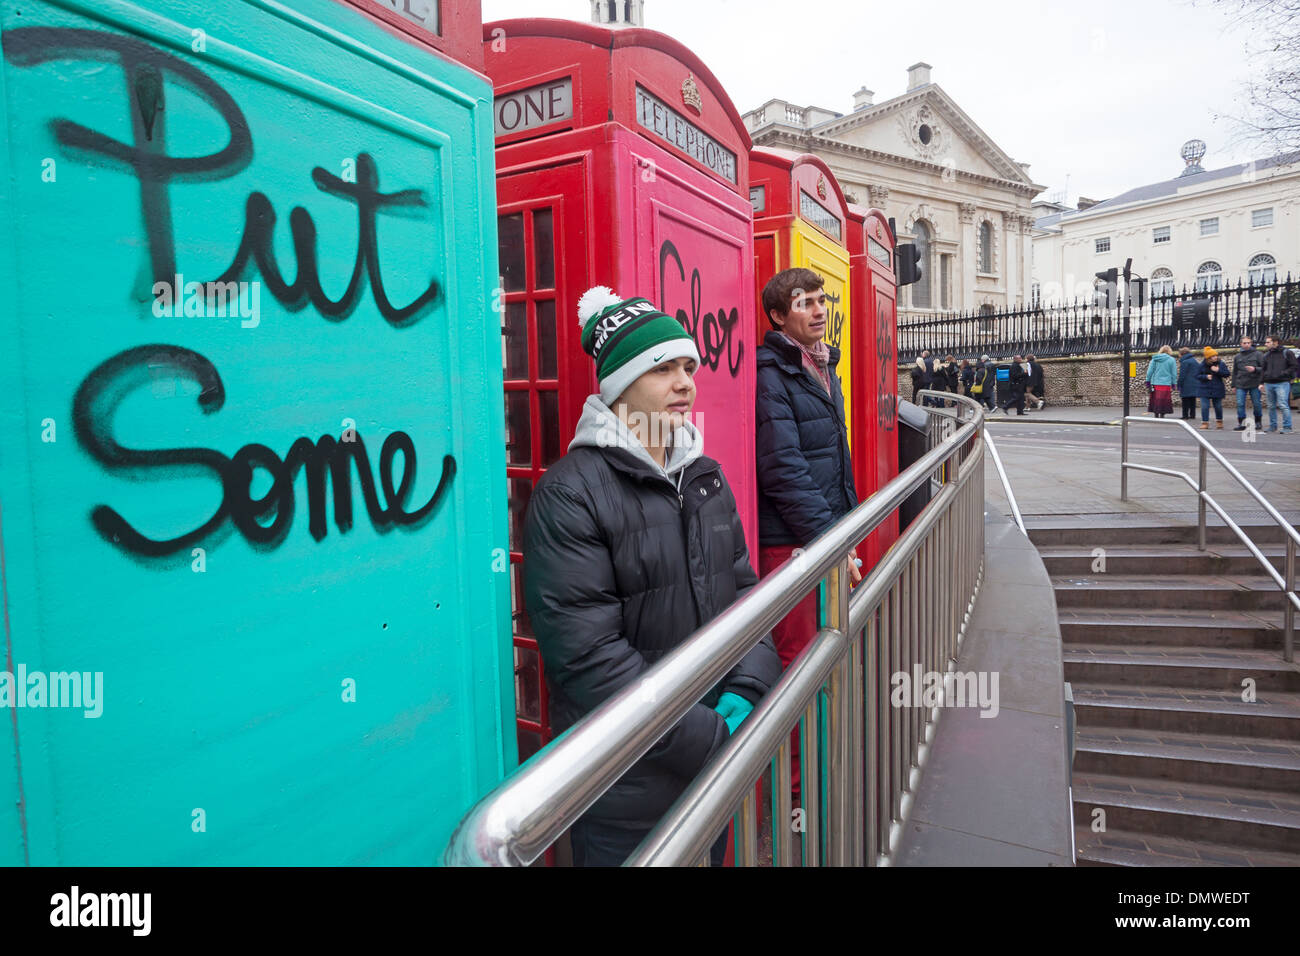 Londra, Charing Cross turisti in posa per le fotografie di fronte graffiti-coperta delle cabine telefoniche Foto Stock